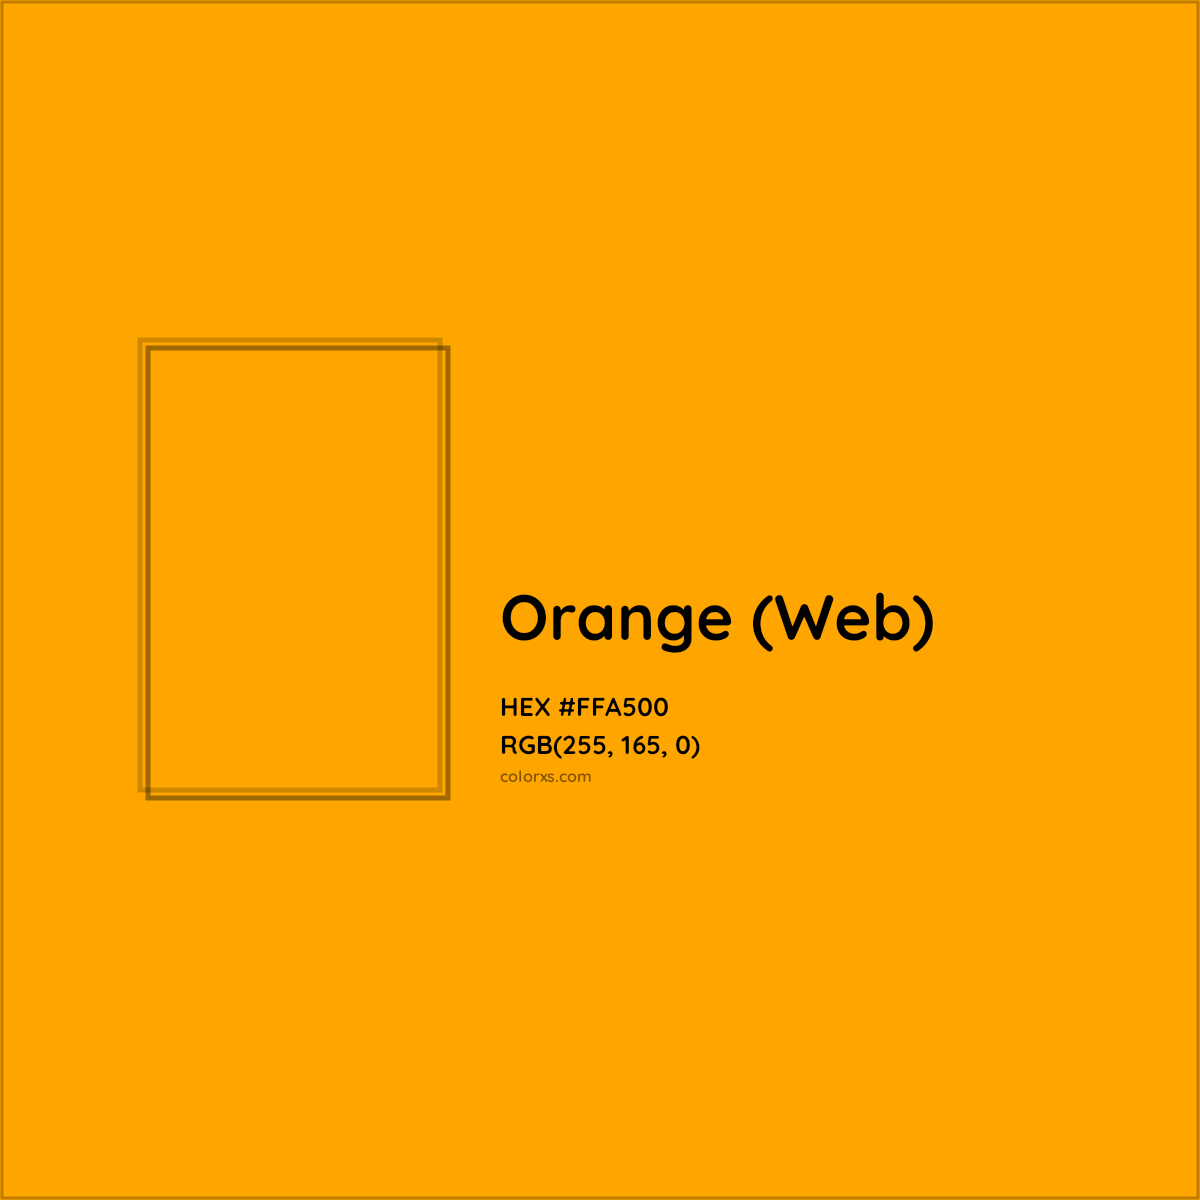 HEX #FFA500 Orange (Web) - Color Code